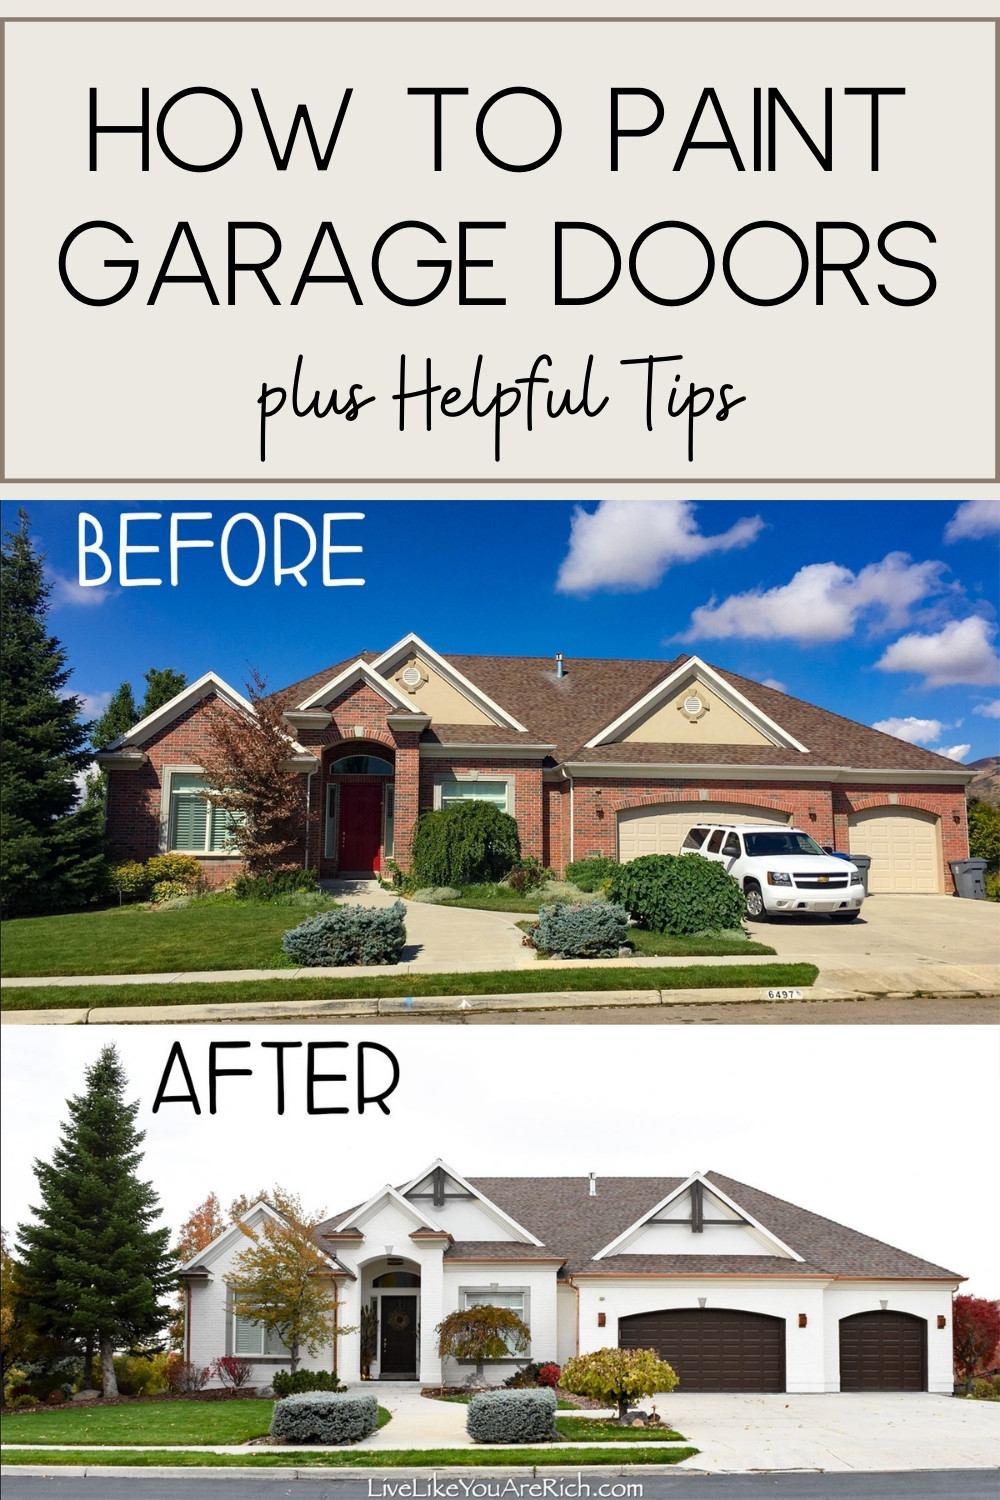 How to Paint Garage Doors plus Helpful Tips